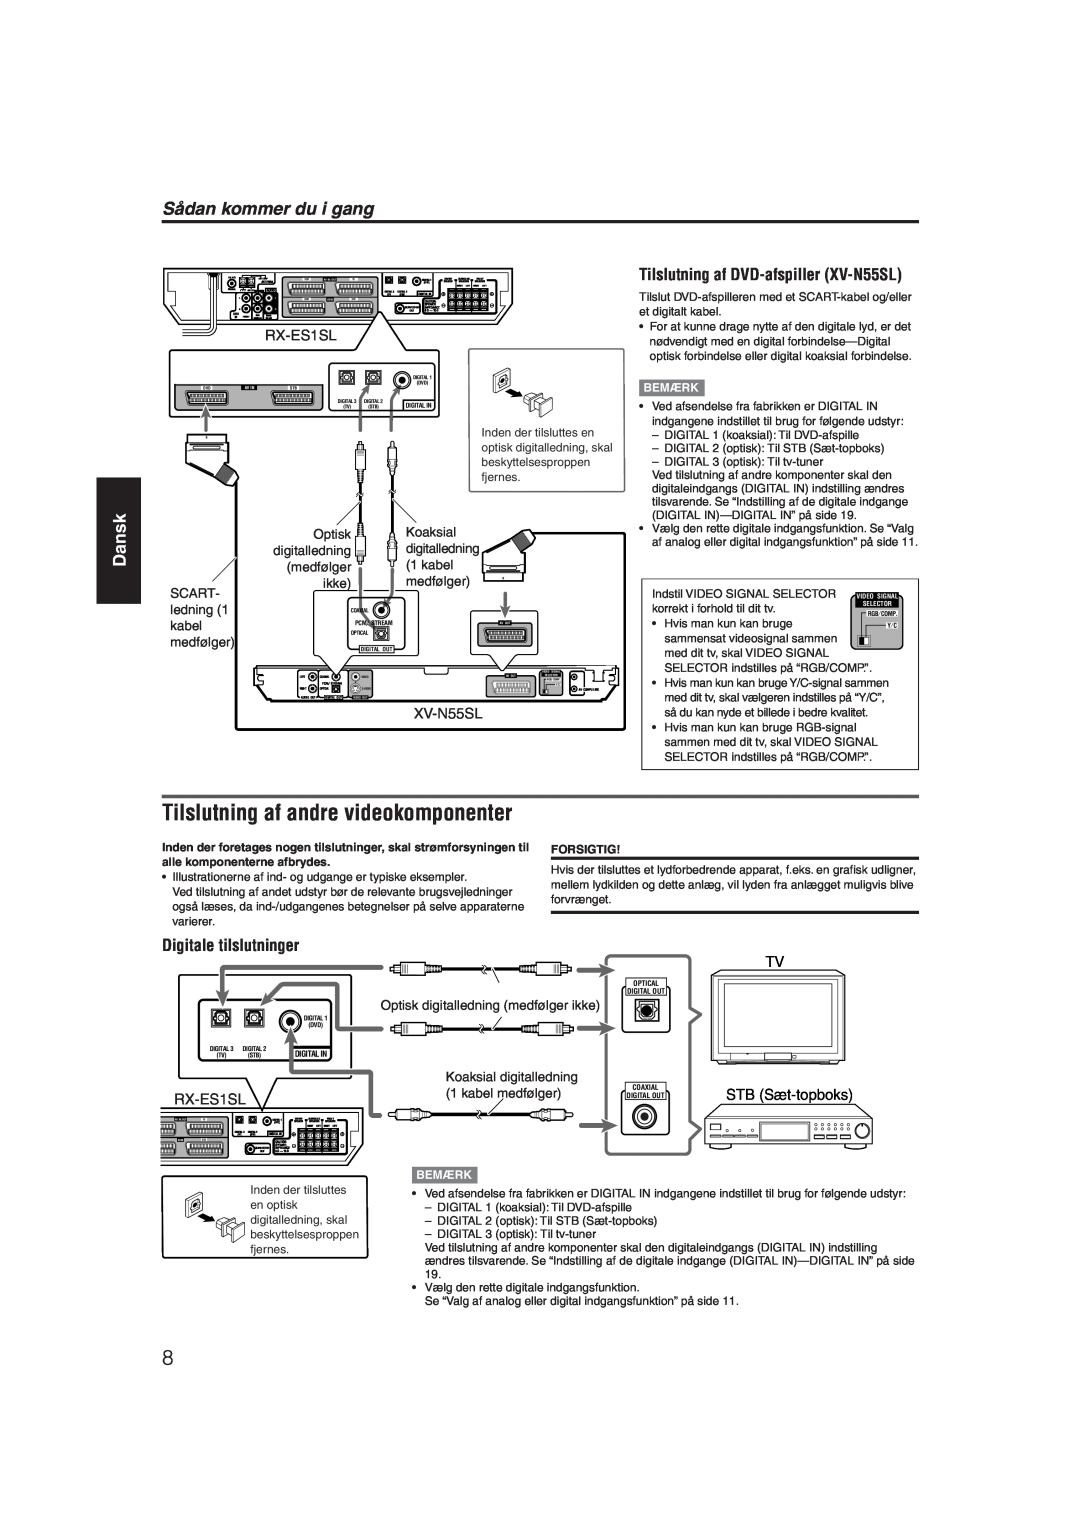 JVC RX-ES1SL manual Tilslutning af andre videokomponenter, Sådan kommer du i gang, Dansk, Digitale tilslutninger, XV-N55SL 